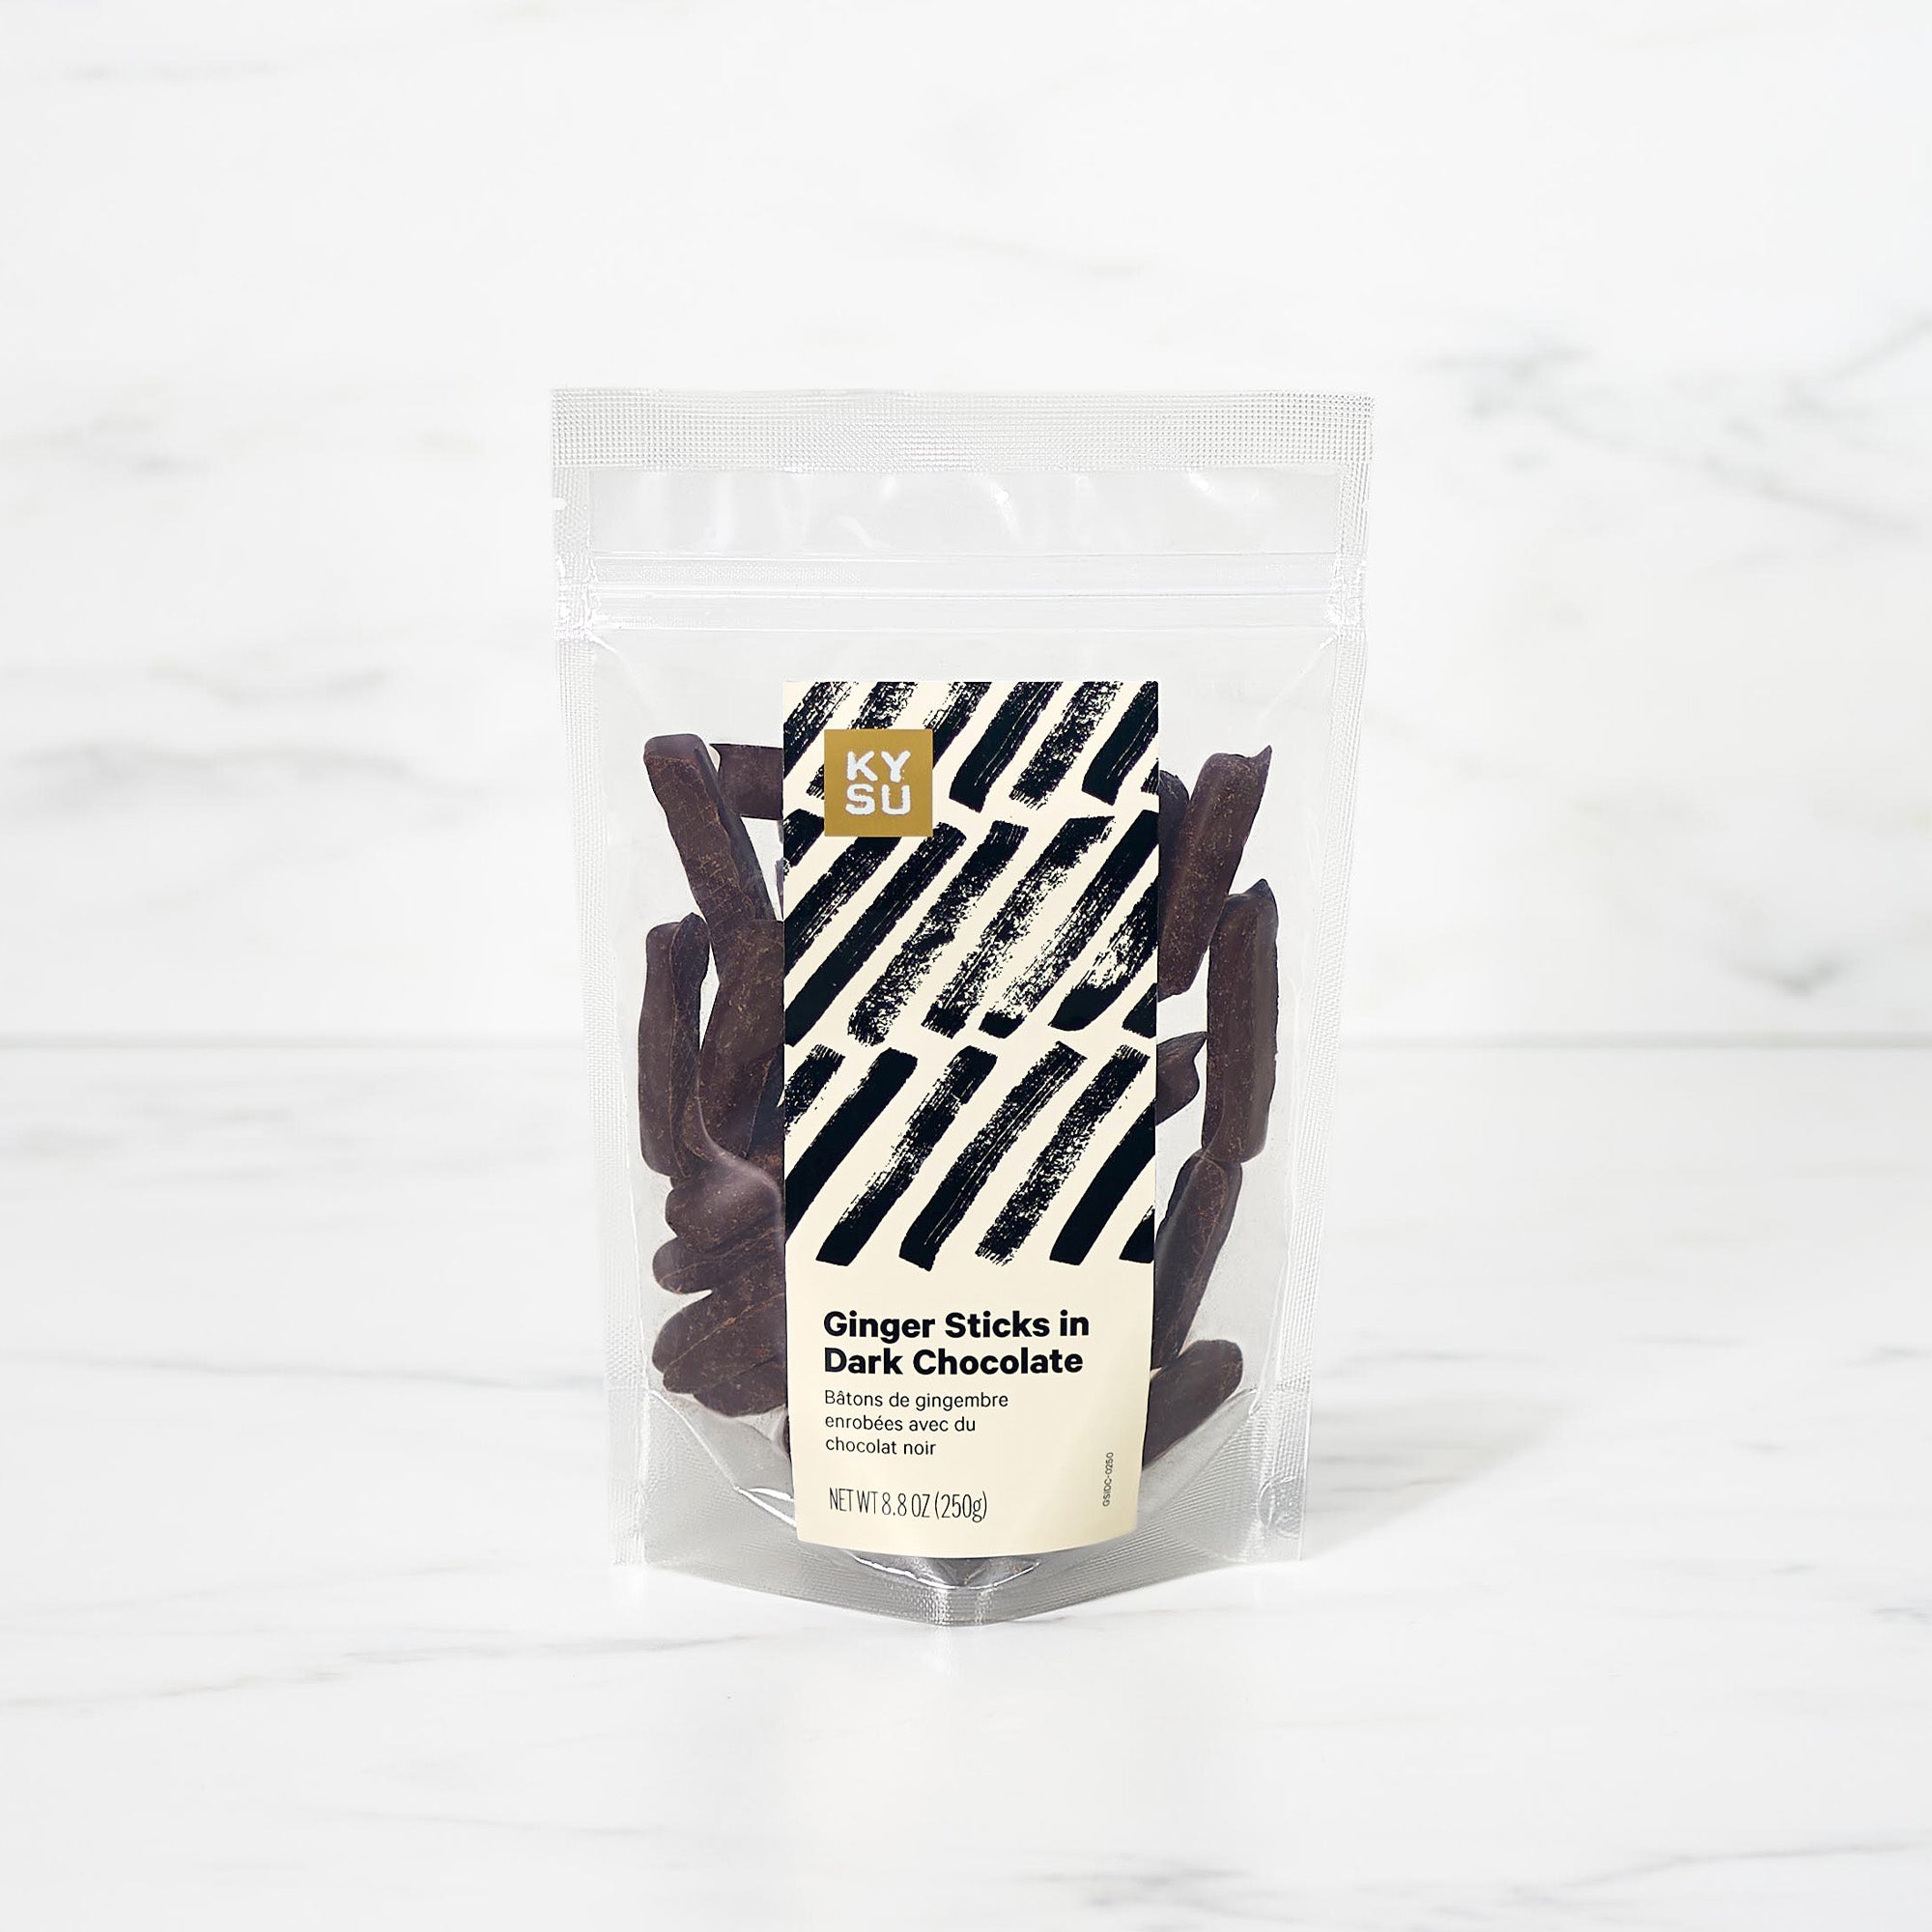 Ginger Sticks in Dark Chocolate, 8.8 oz